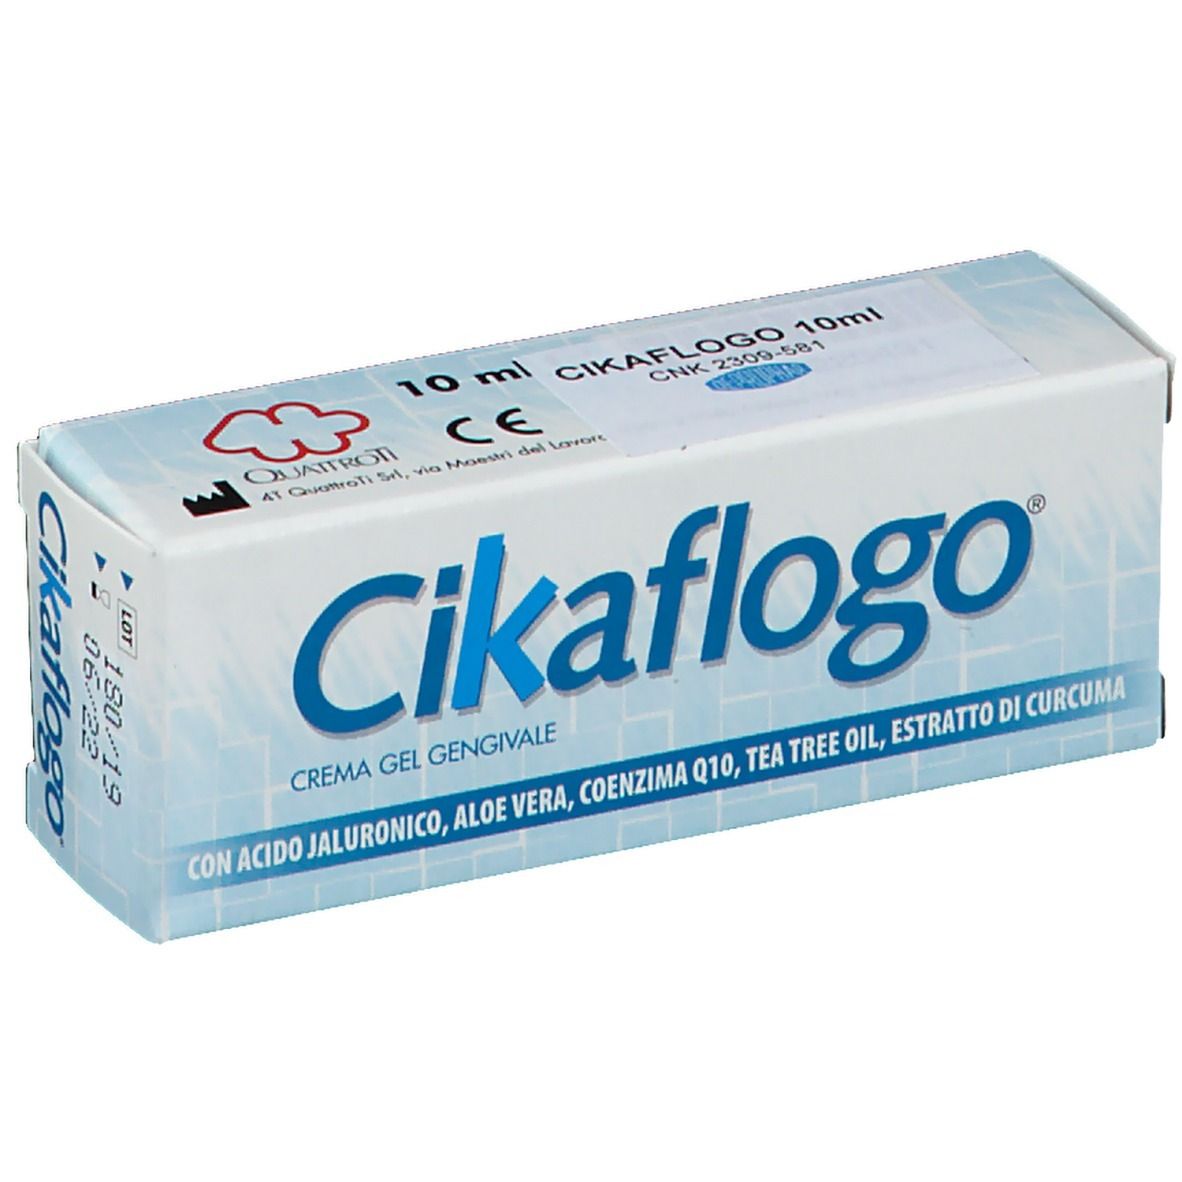 Image of Cikaflogo® Gel Creme